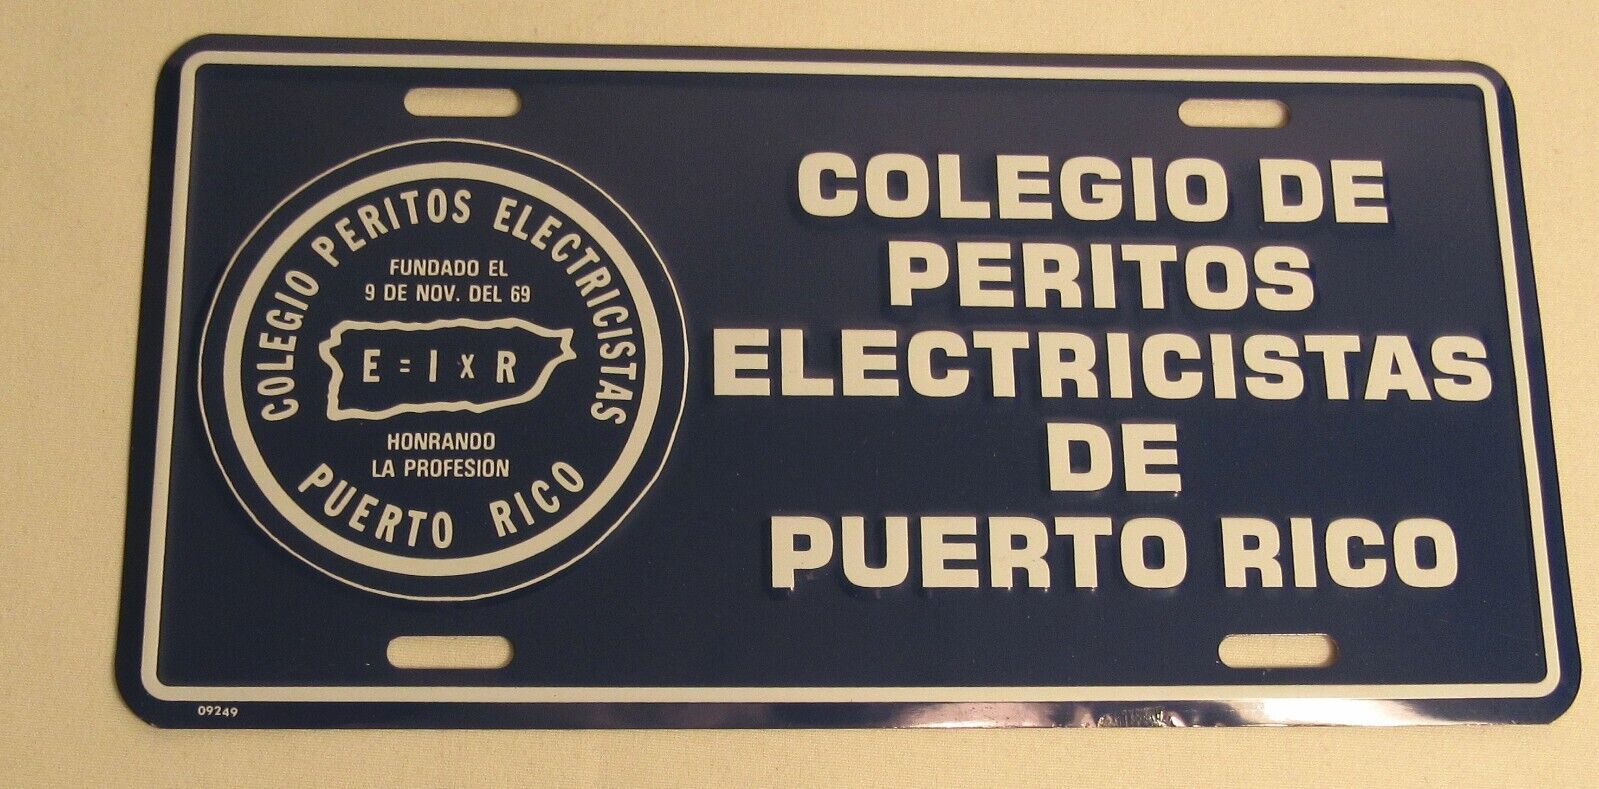 Colegio De Peritos Electricistas De Puerto Rico License Plate Auto Car Tag- NEW